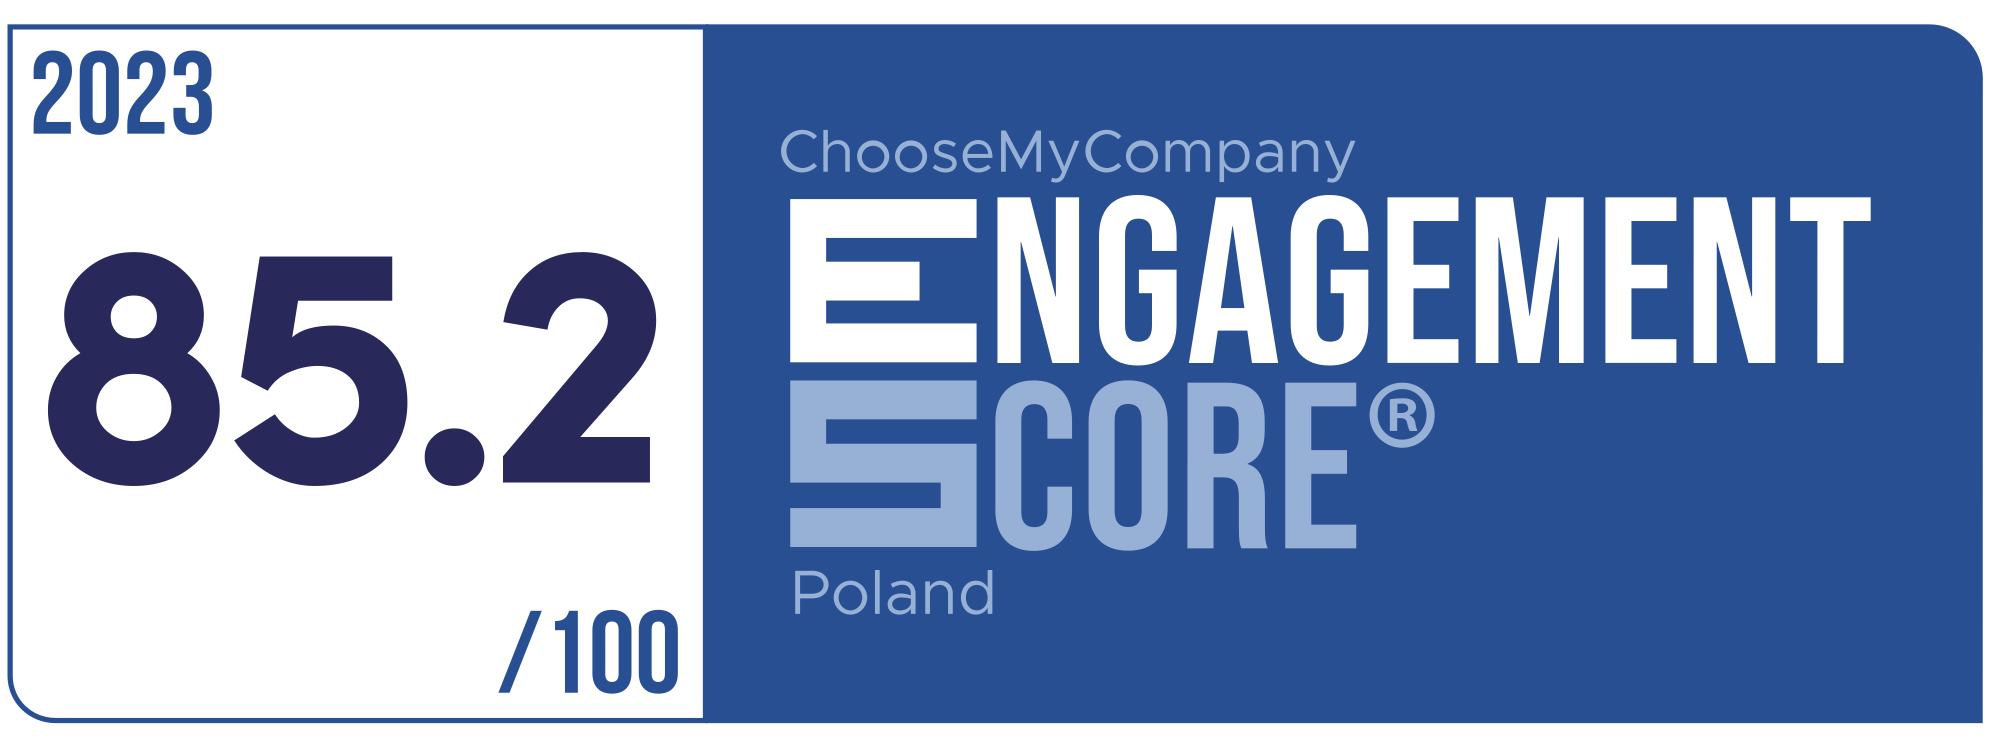 Label Engagement Score 2023 Poland